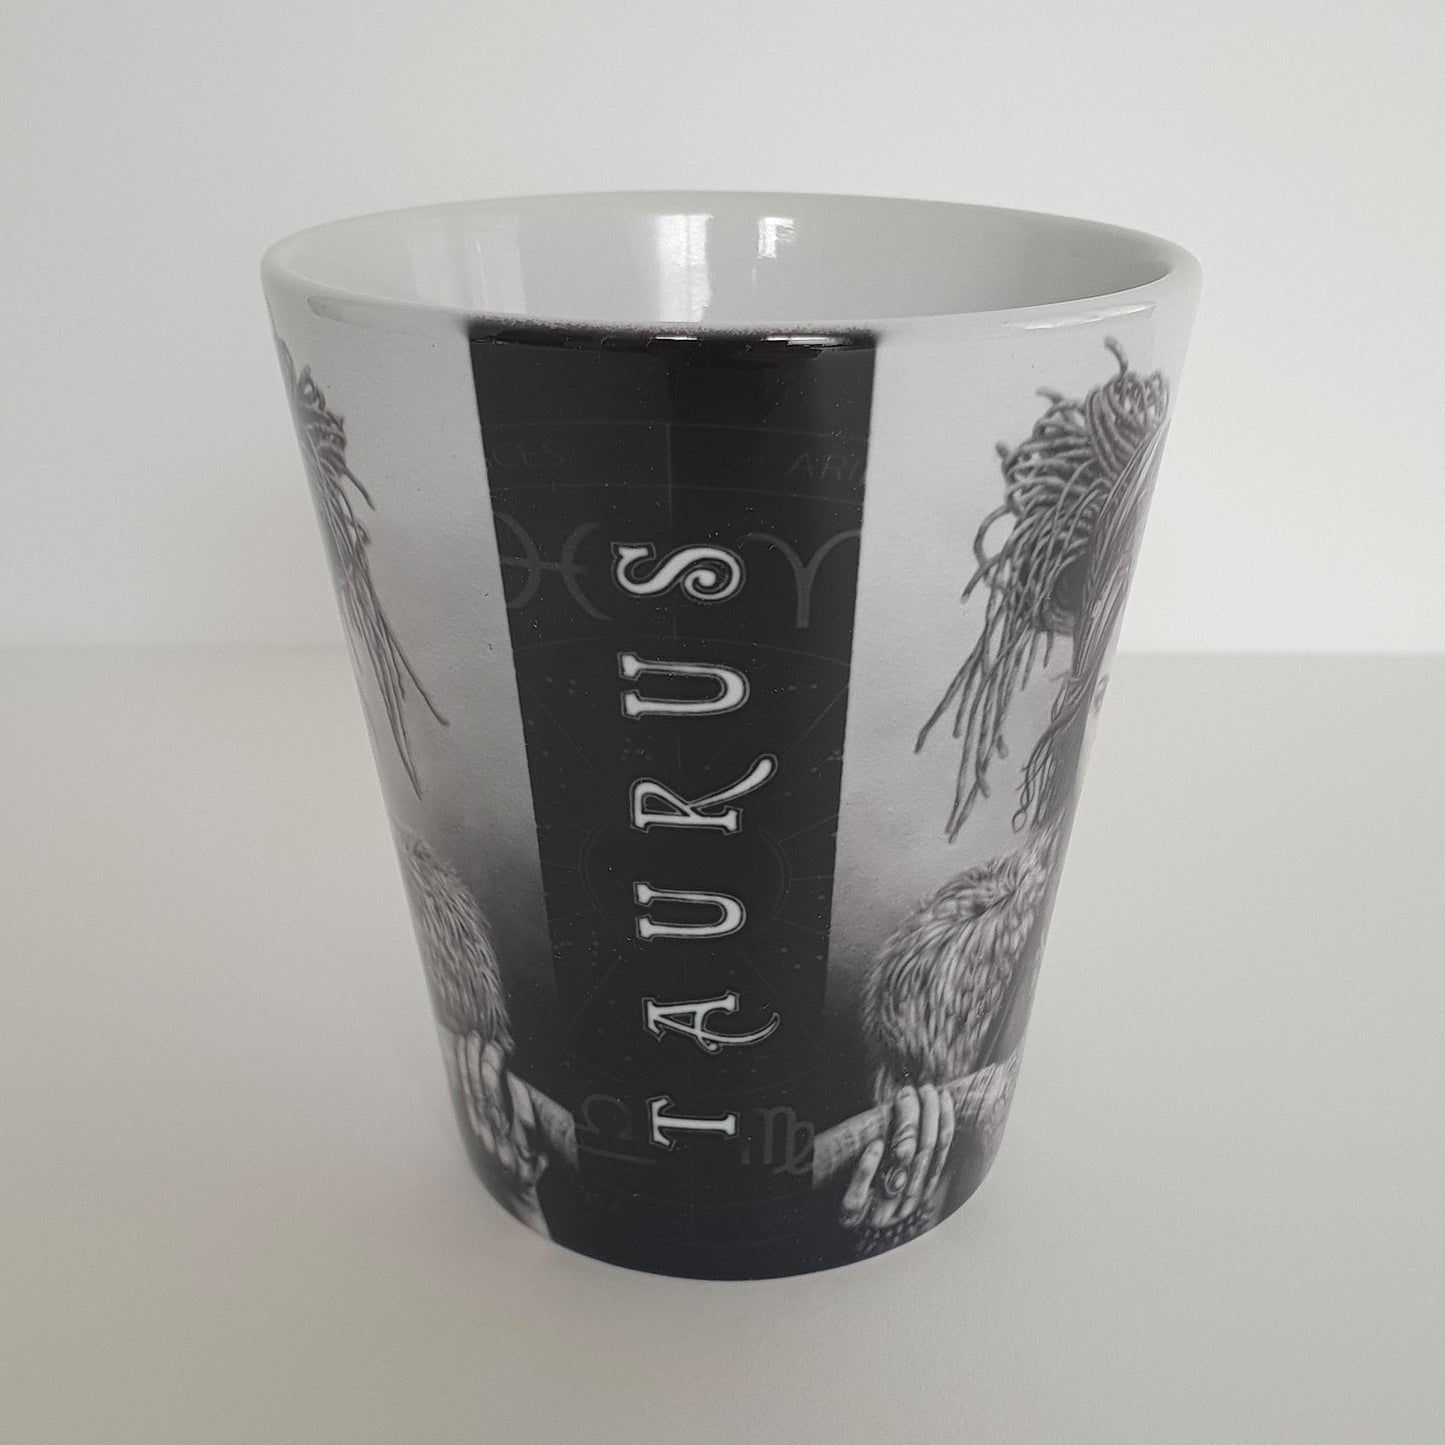 'Taurus' ceramic mug